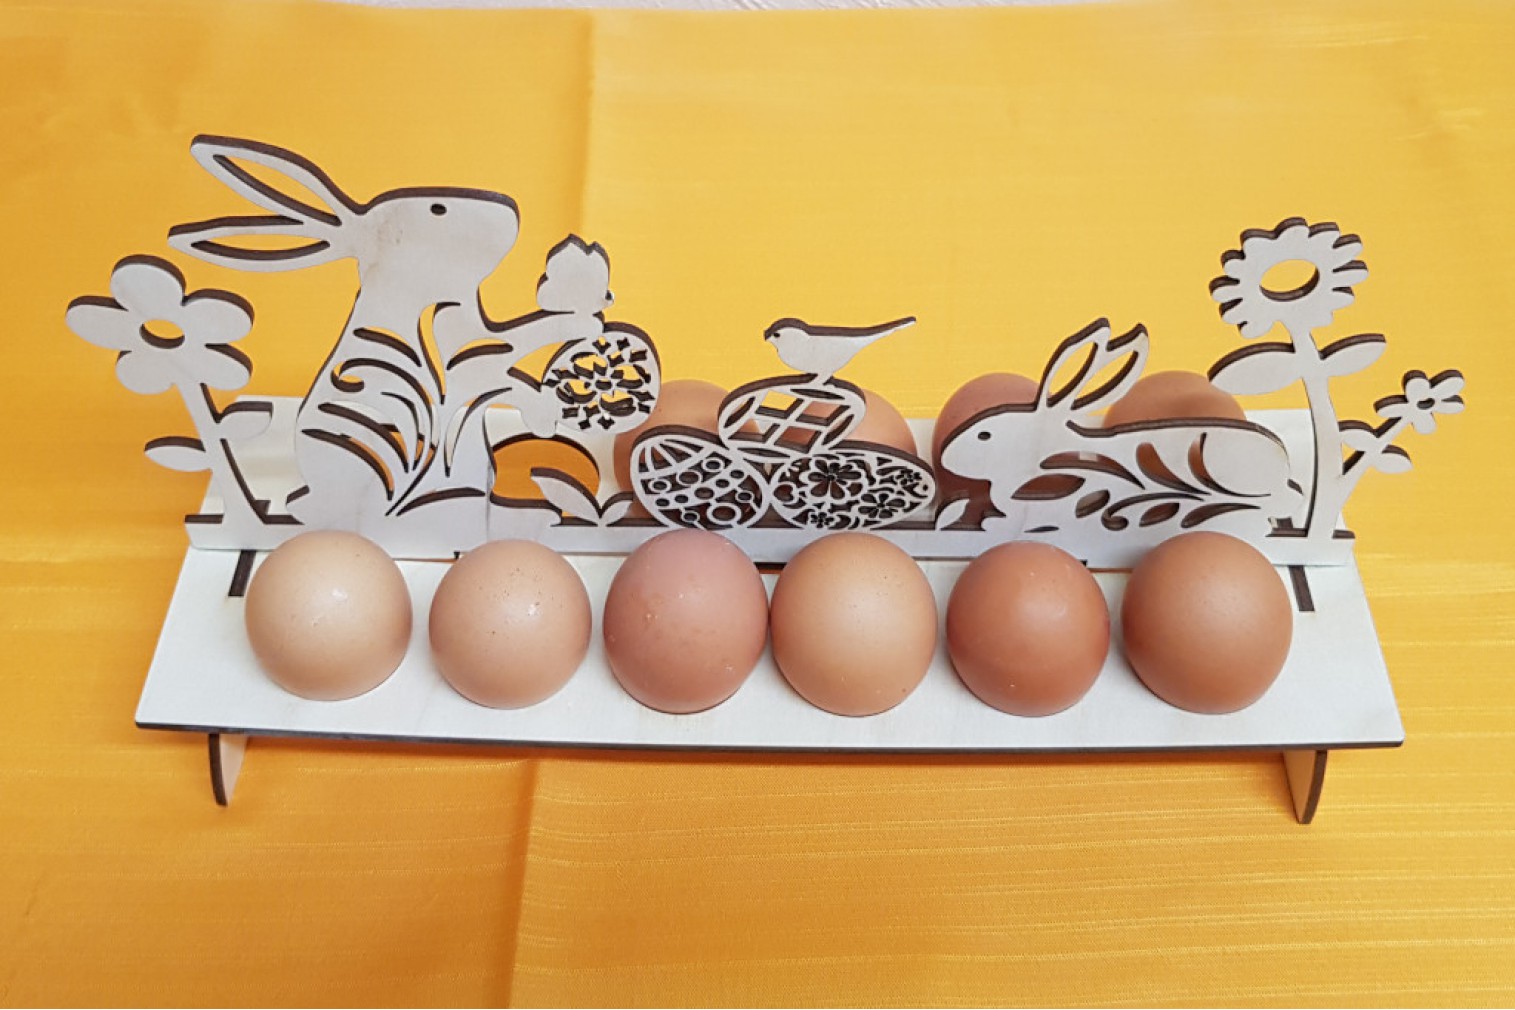 Egg holder for 12 eggs